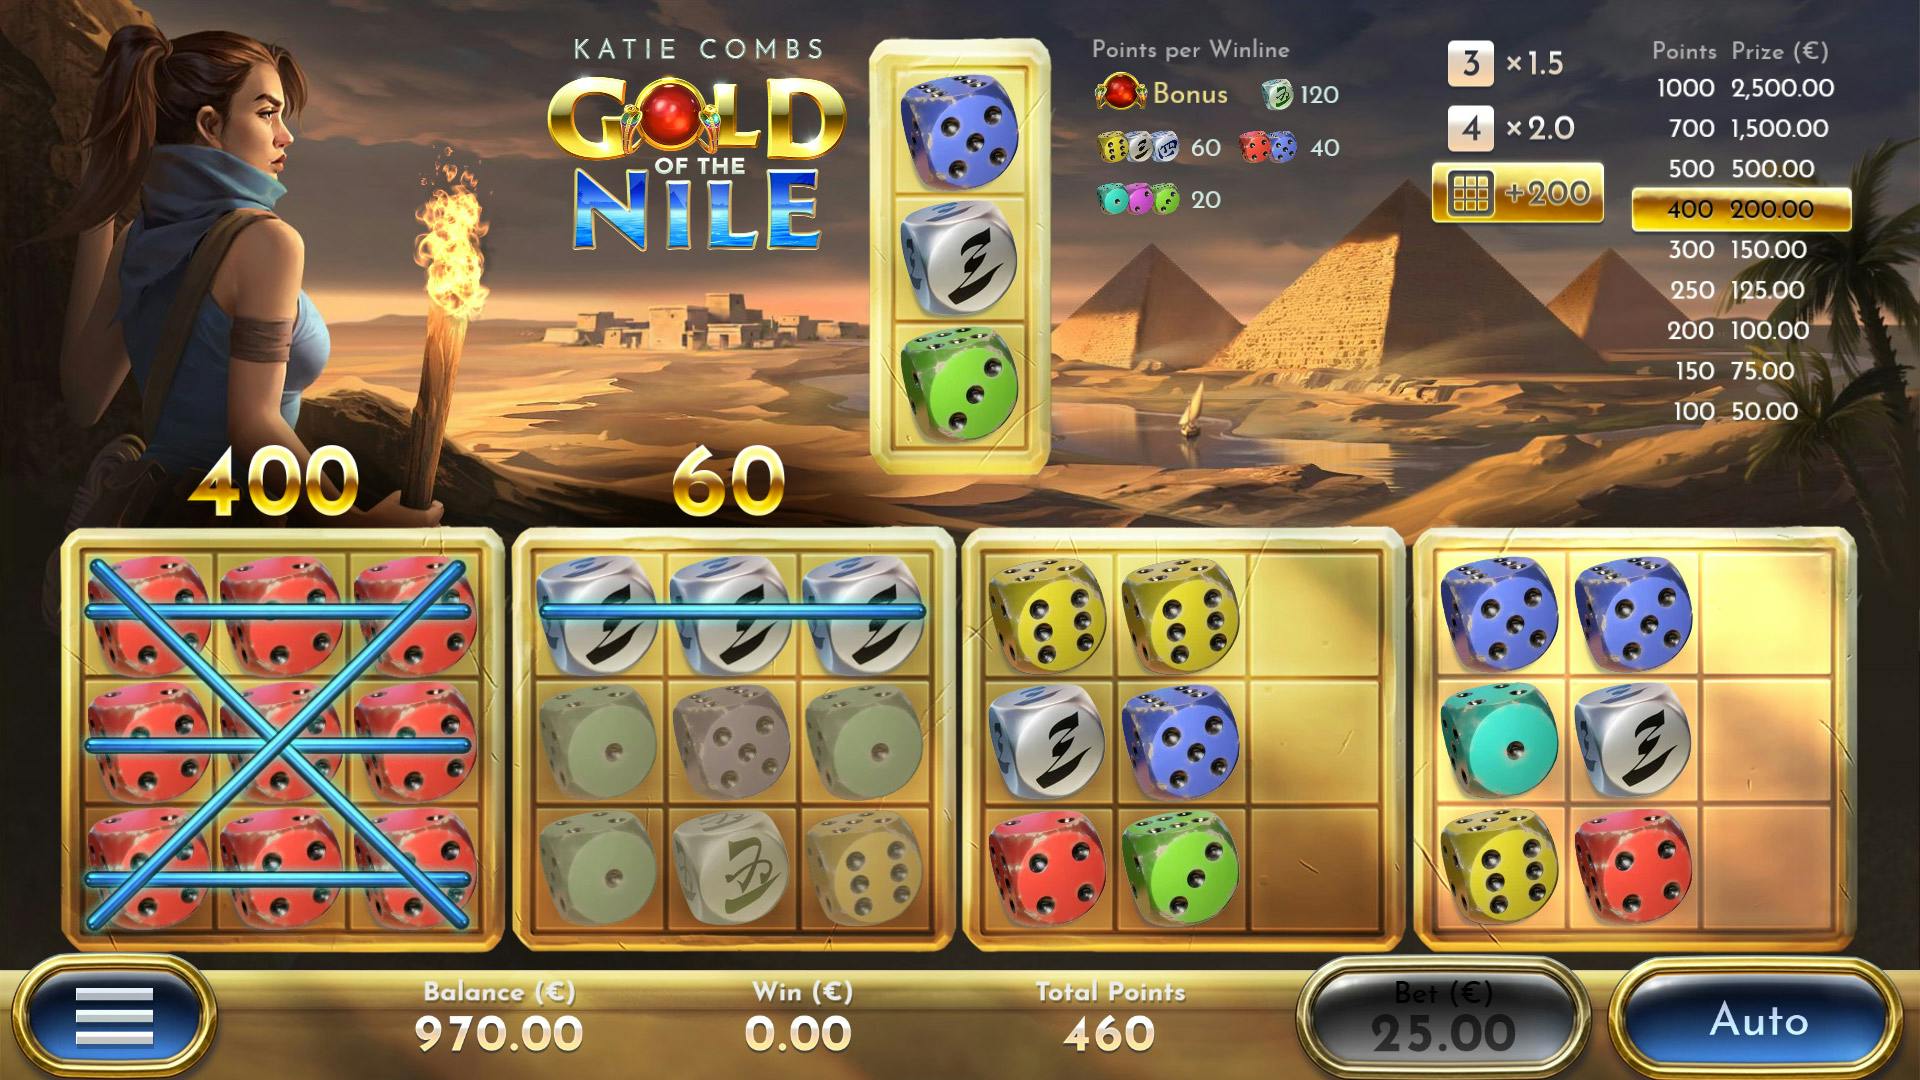 Airdice Katie Combs Gold of the Nile jeu de dice